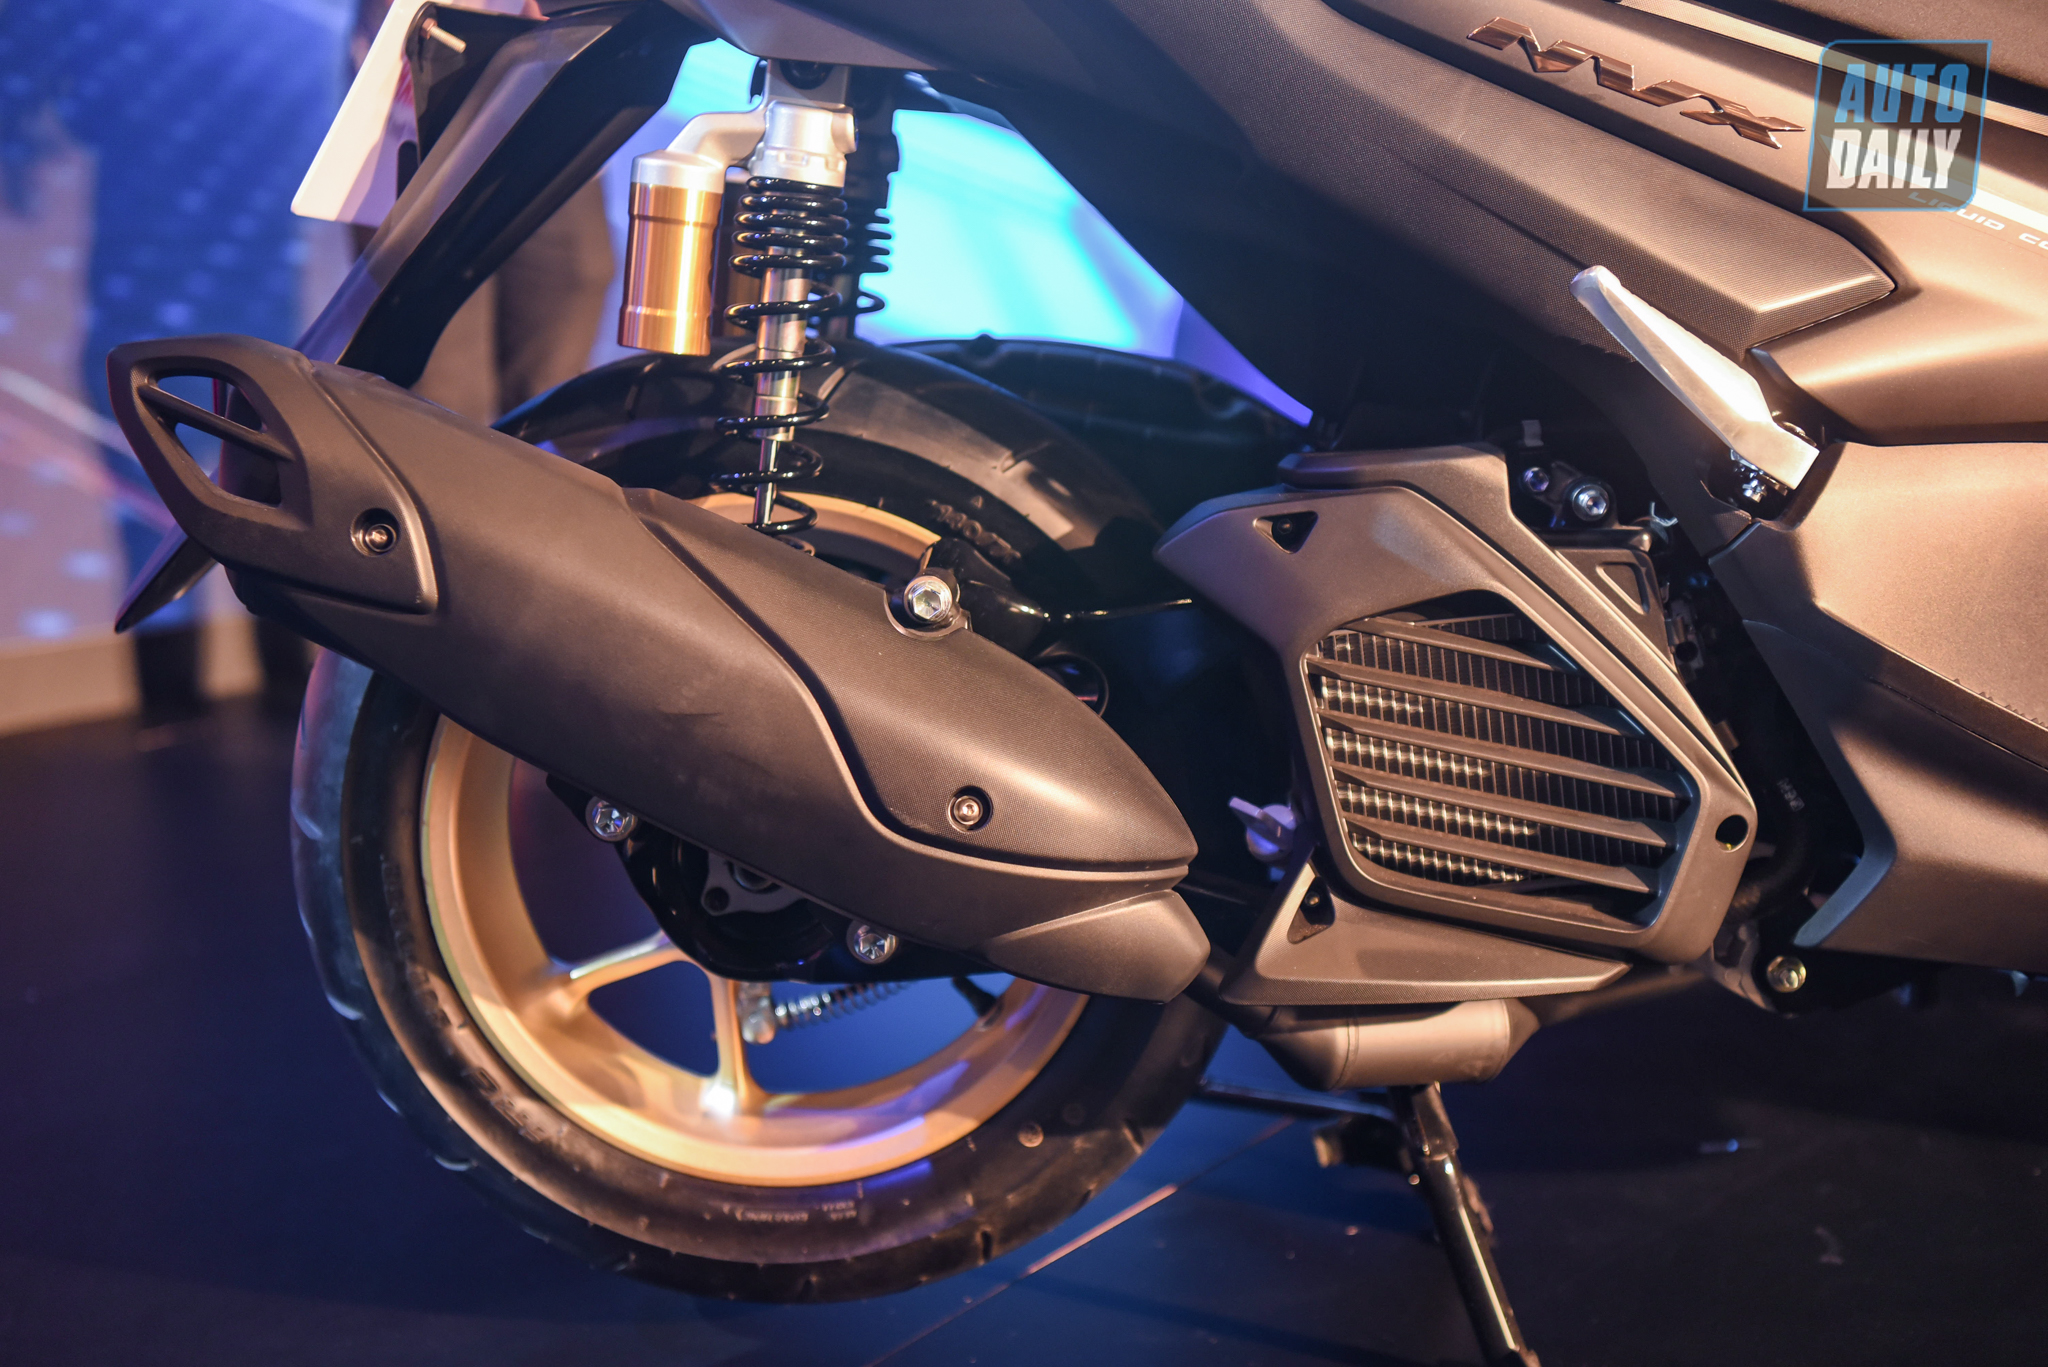 Chi tiết xe tay ga thể thao Yamaha NVX 155 2021 giá từ 53 triệu đồng yamaha-nvx-30.jpg